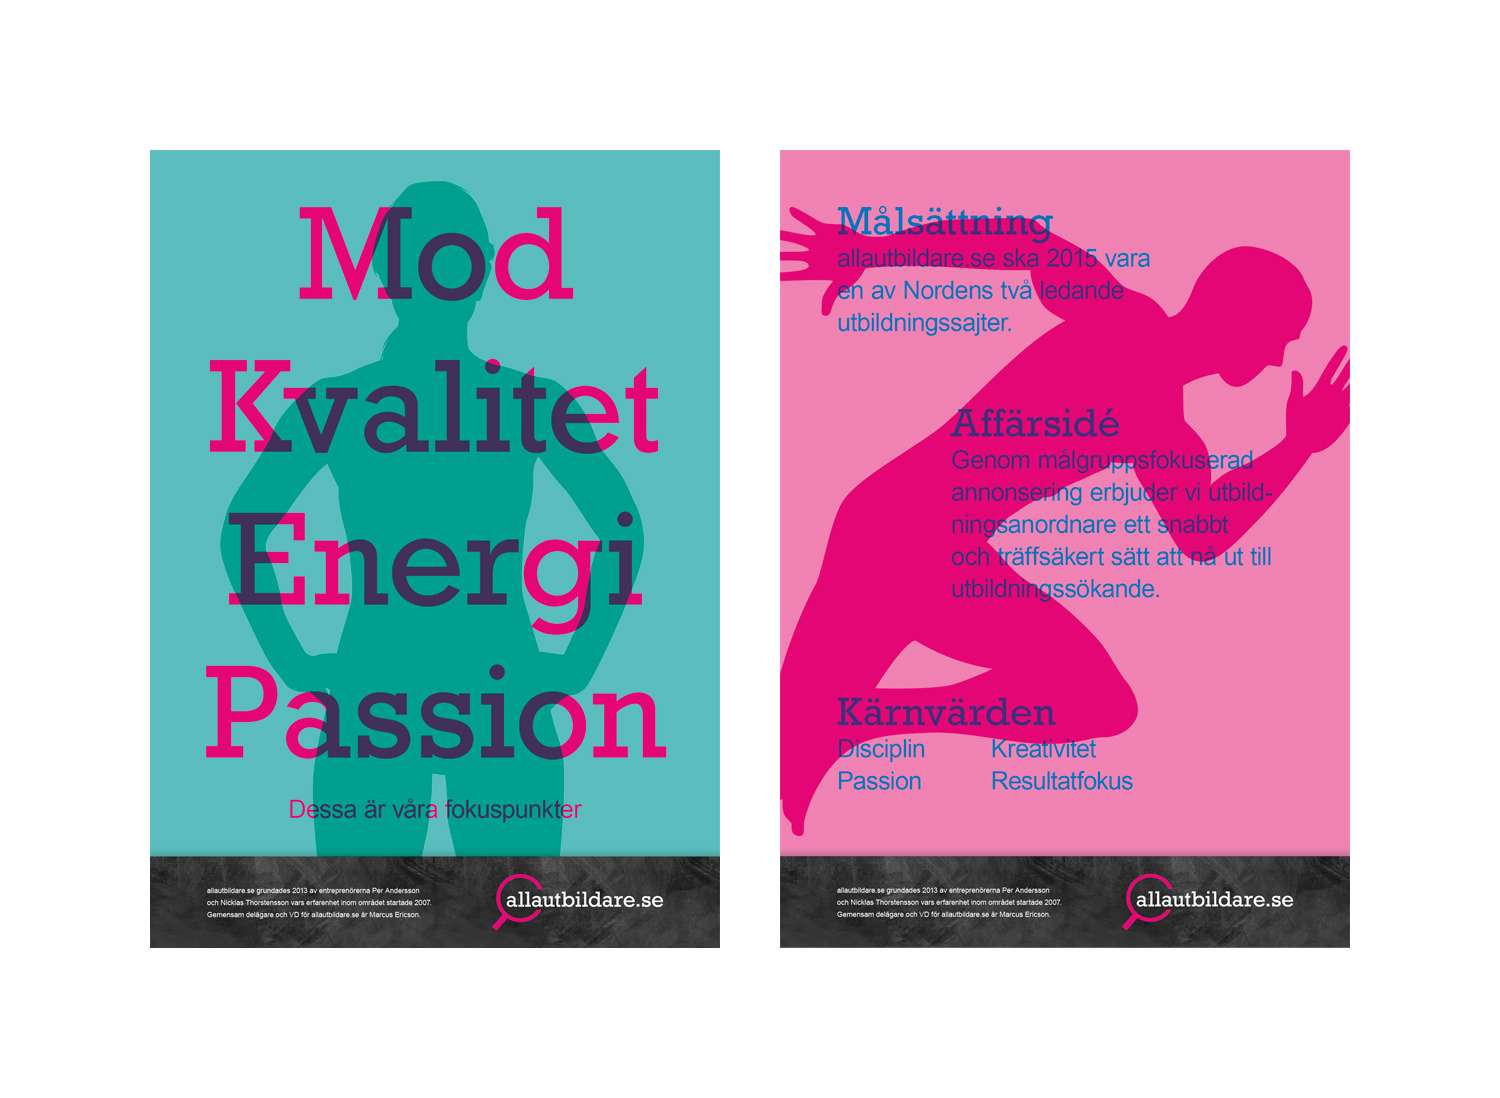 allautbildare.se branding poster by Viktor Lanneld